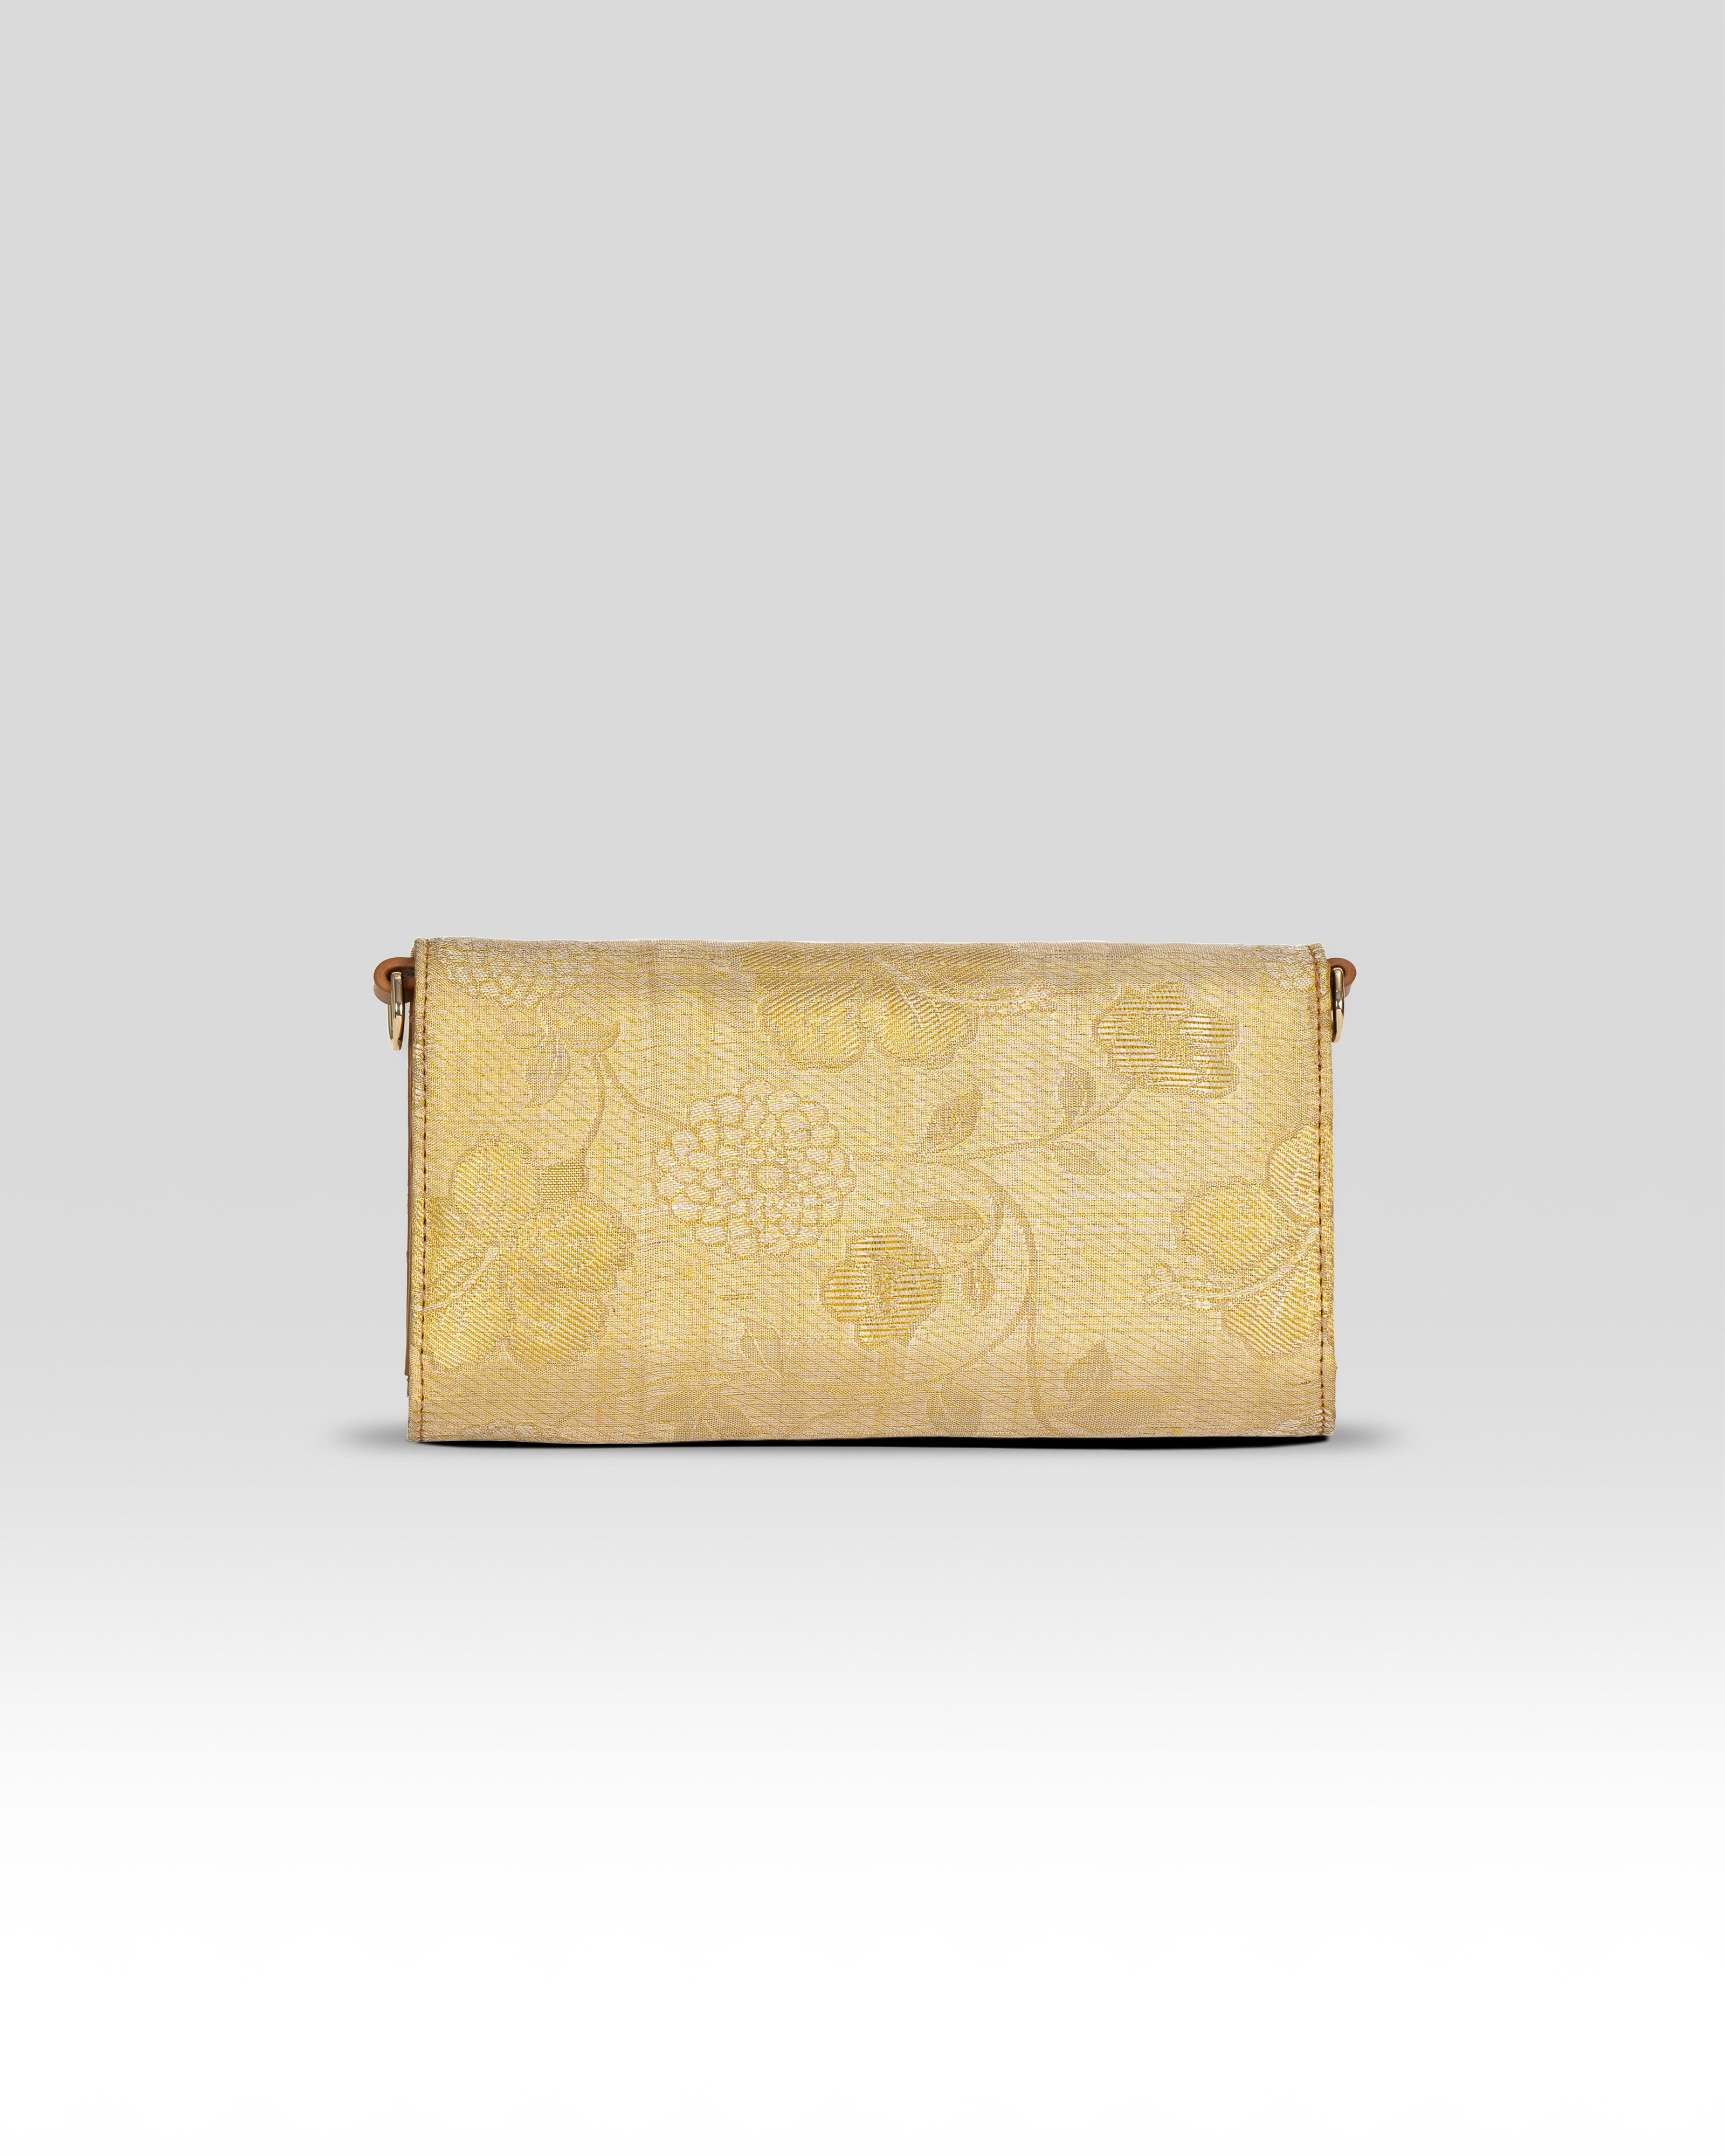 Vana Tissue Sling Bag Gold & Tan